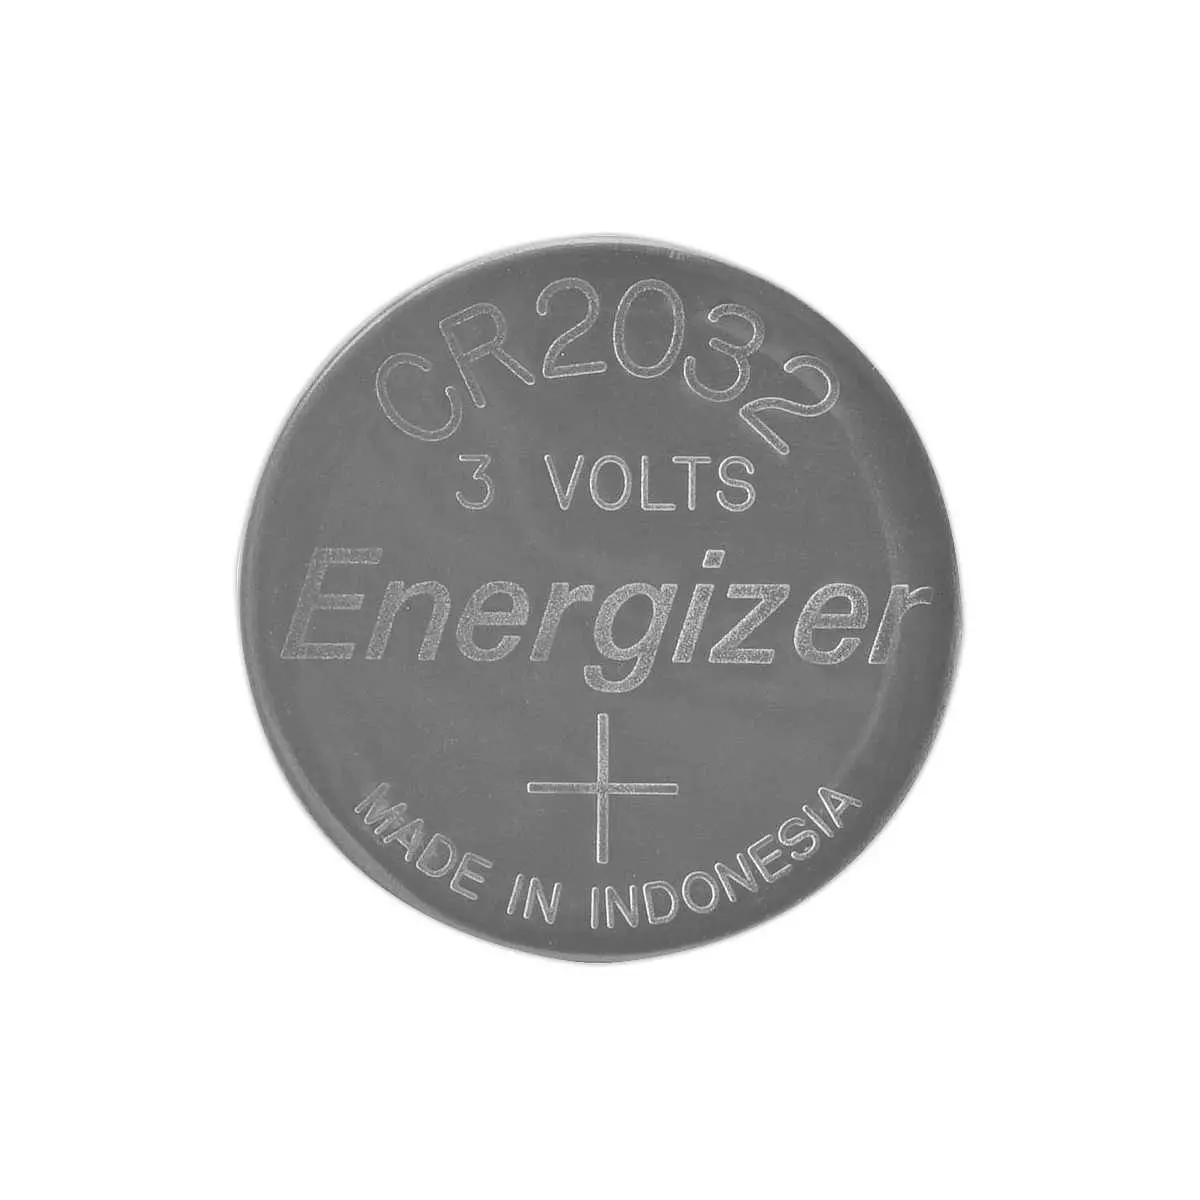 Energizer Piles bouton Energizer Lithium 2032, pack de 2 